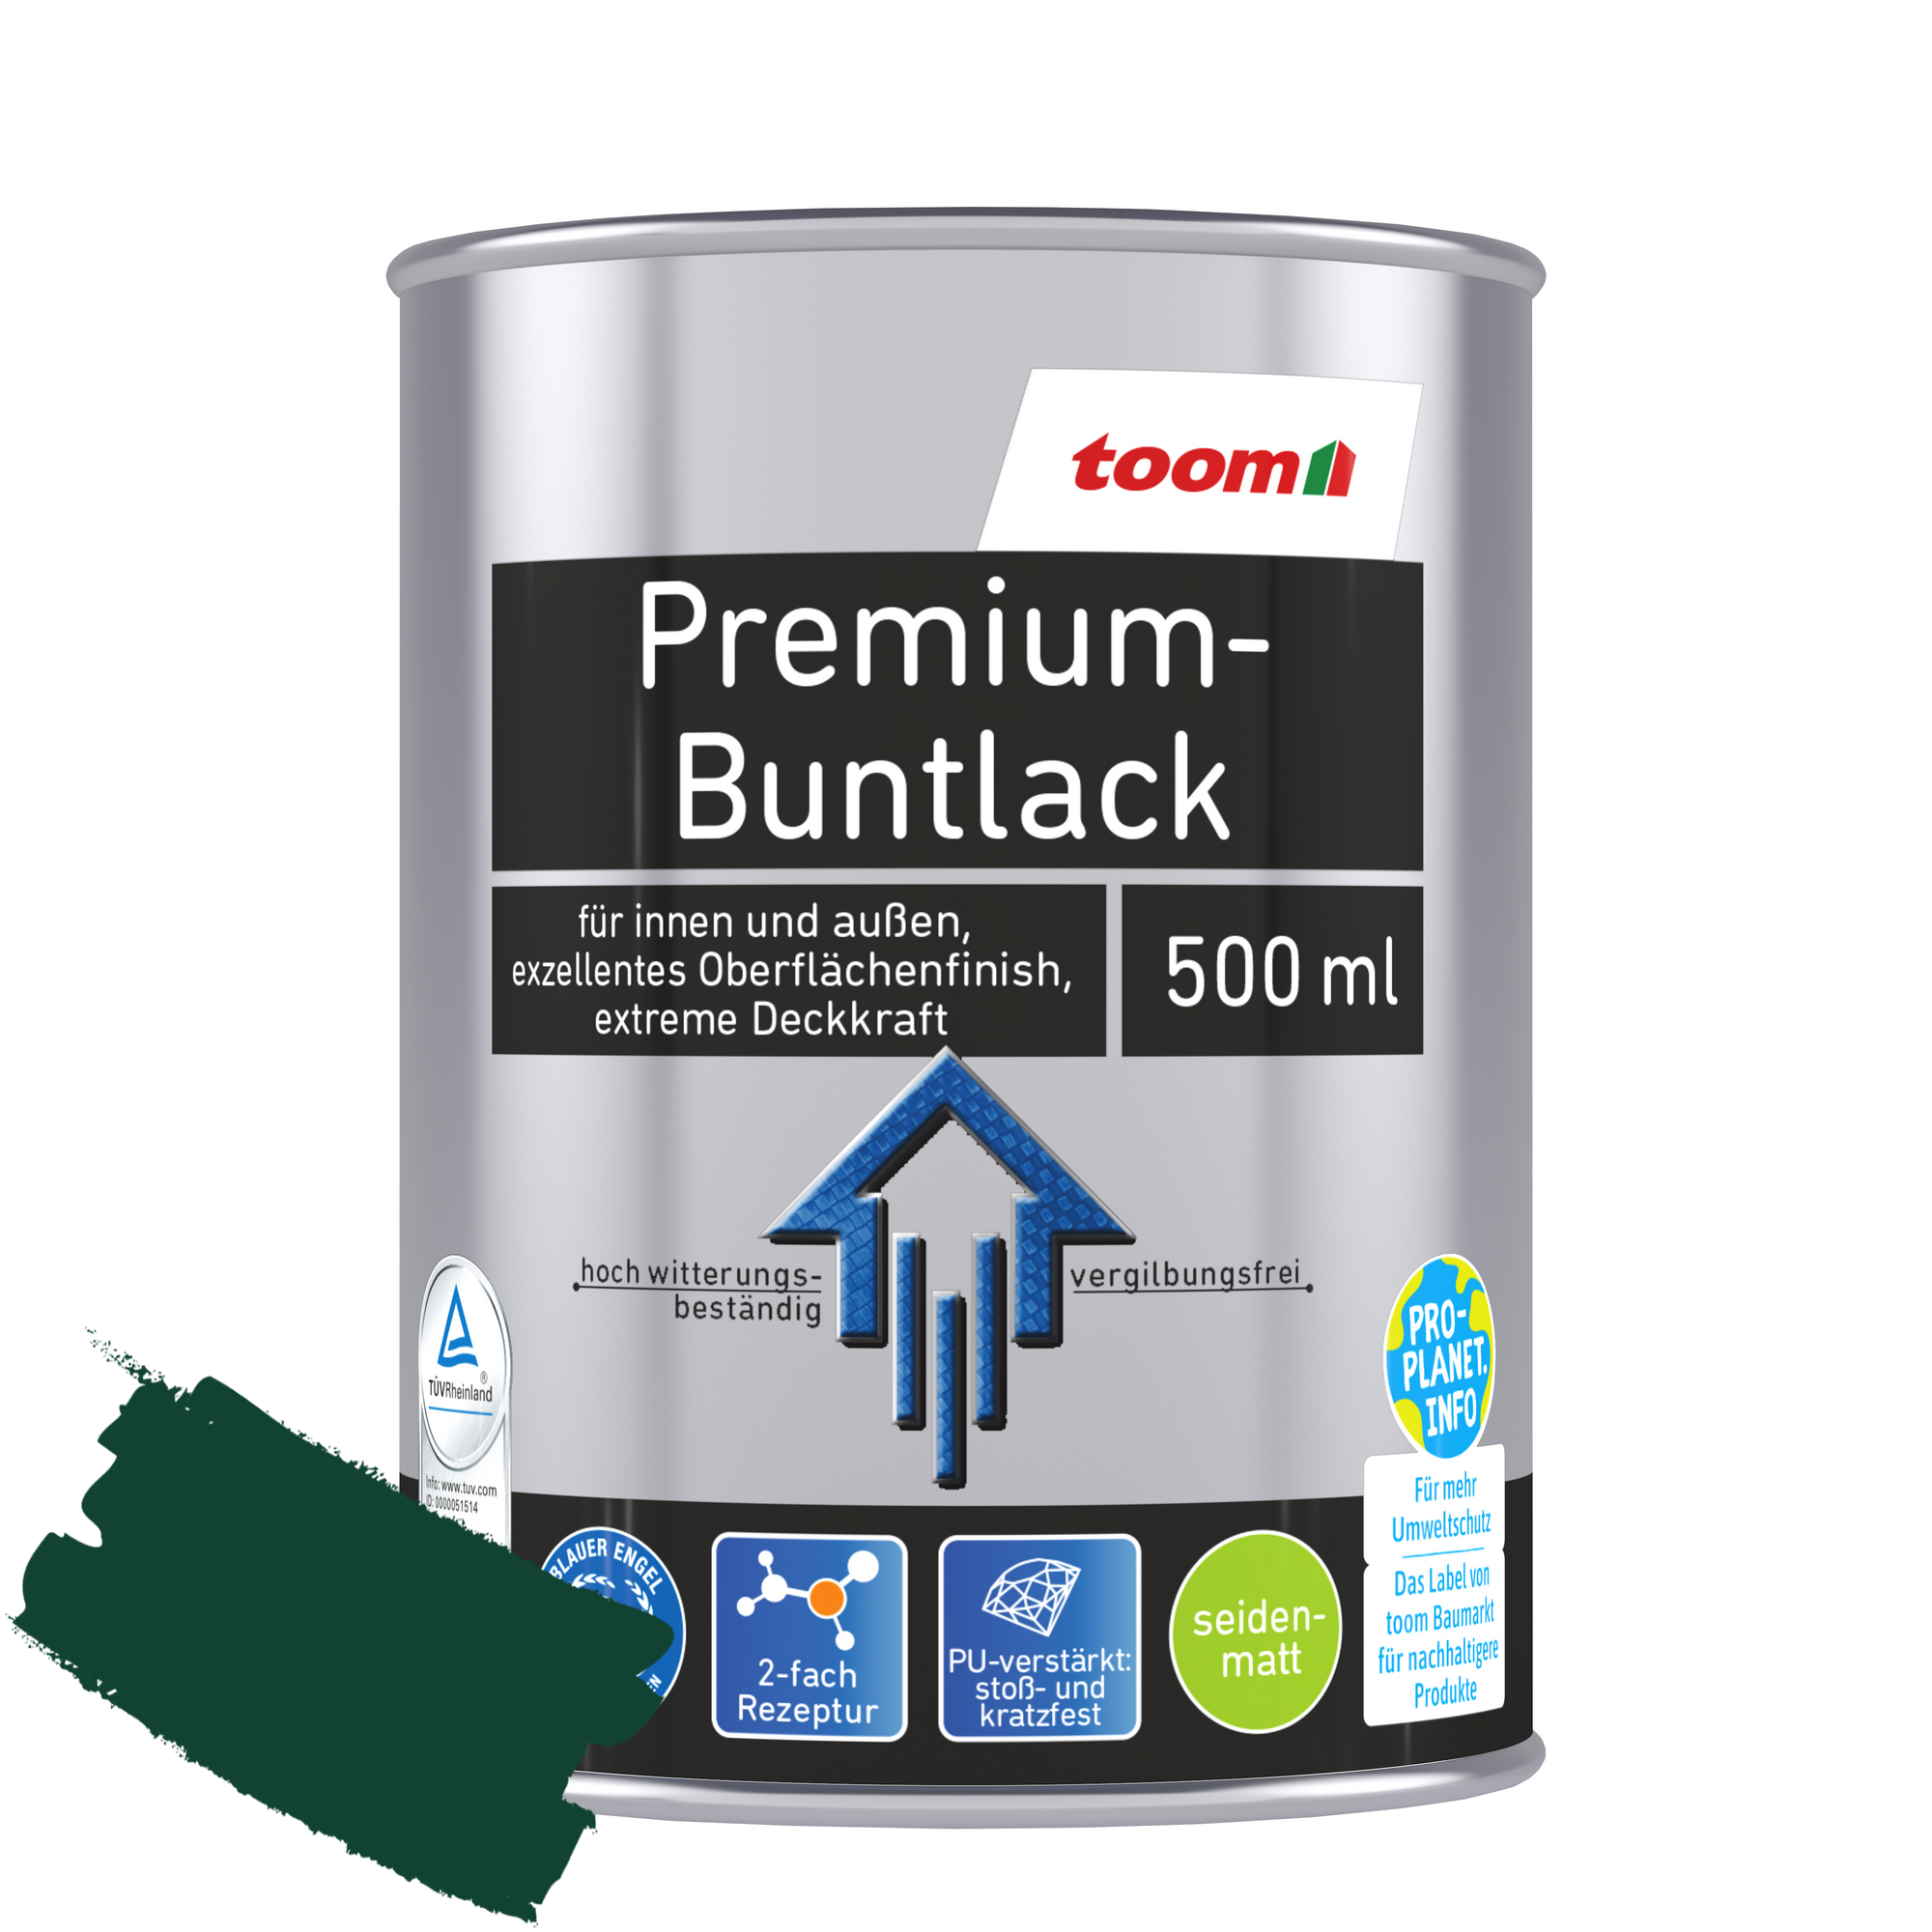 Premium-Buntlack moosgrün seidenmatt 500 ml + product picture